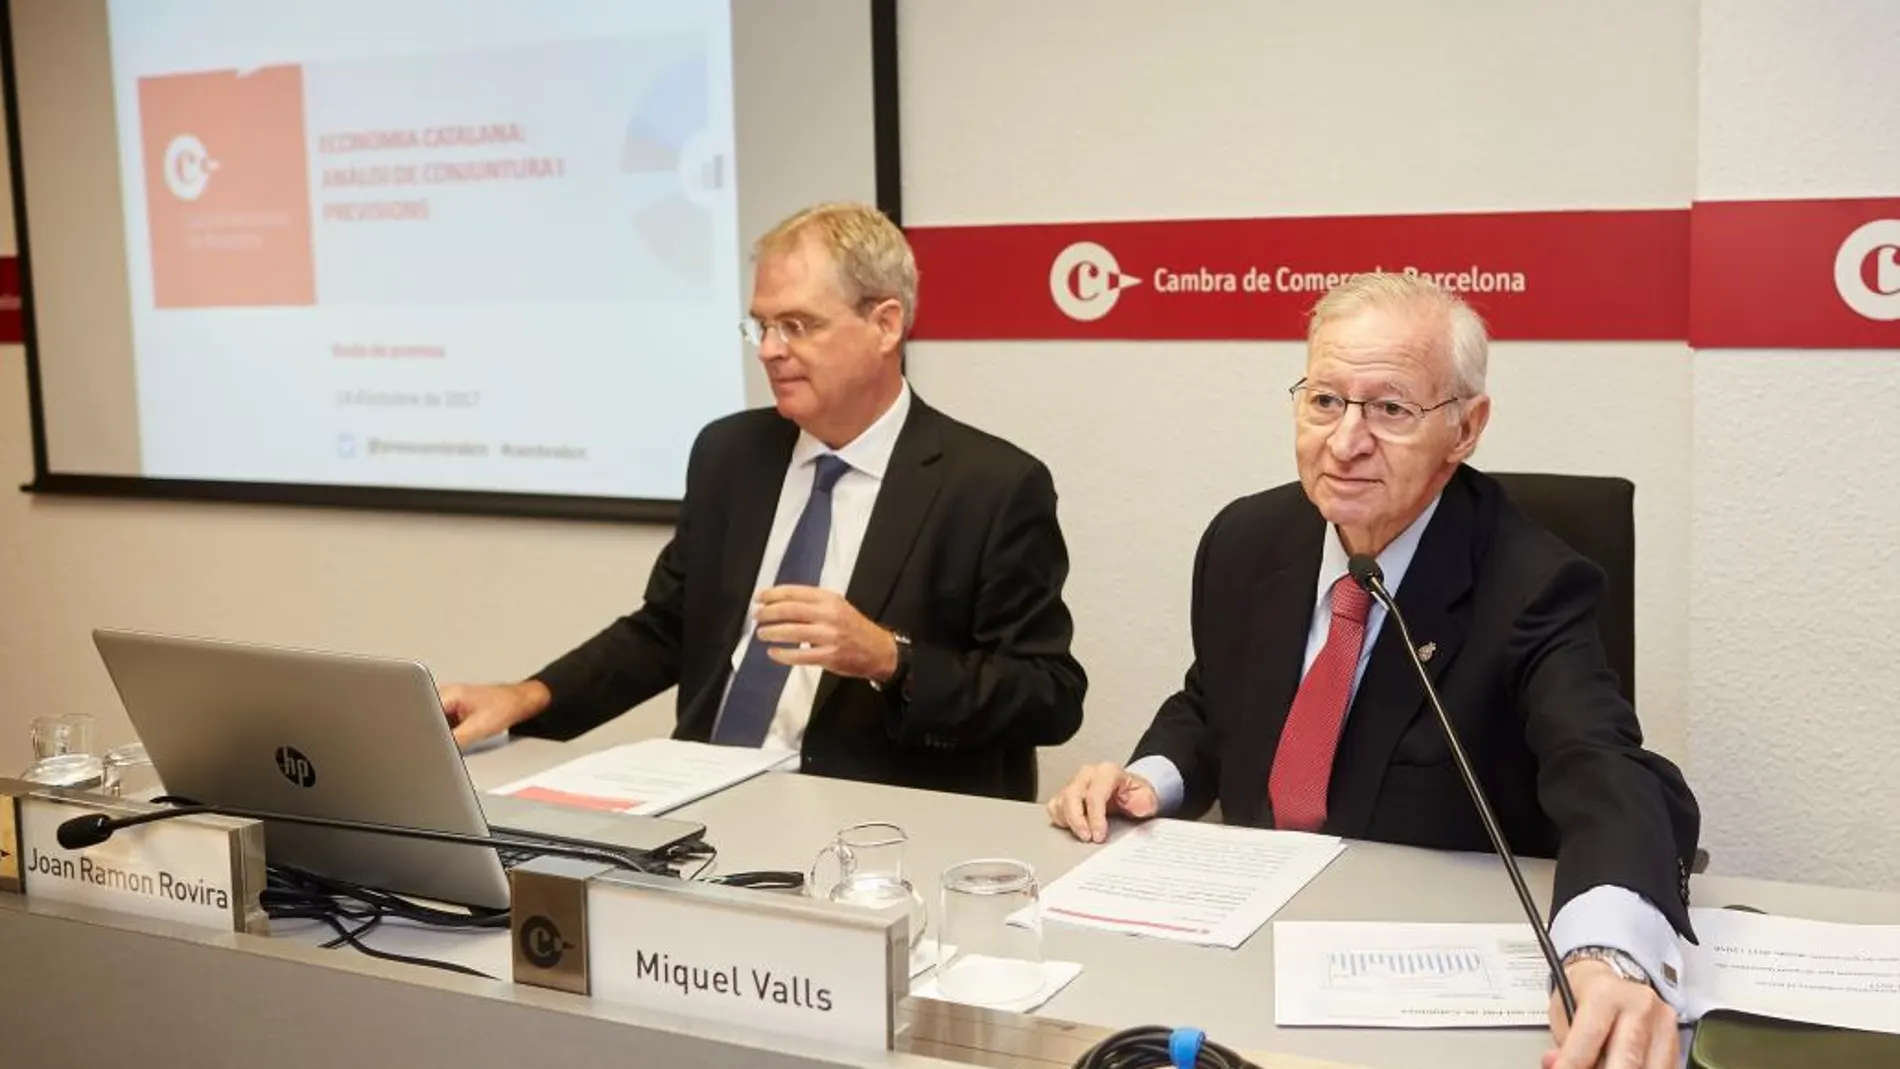 El presidente de la Cámara de Comercio de Barcelona, Miquel Valls (d), junto al responsable de estudios económicos de la entidad, Joan Ramon Rovira /Efe